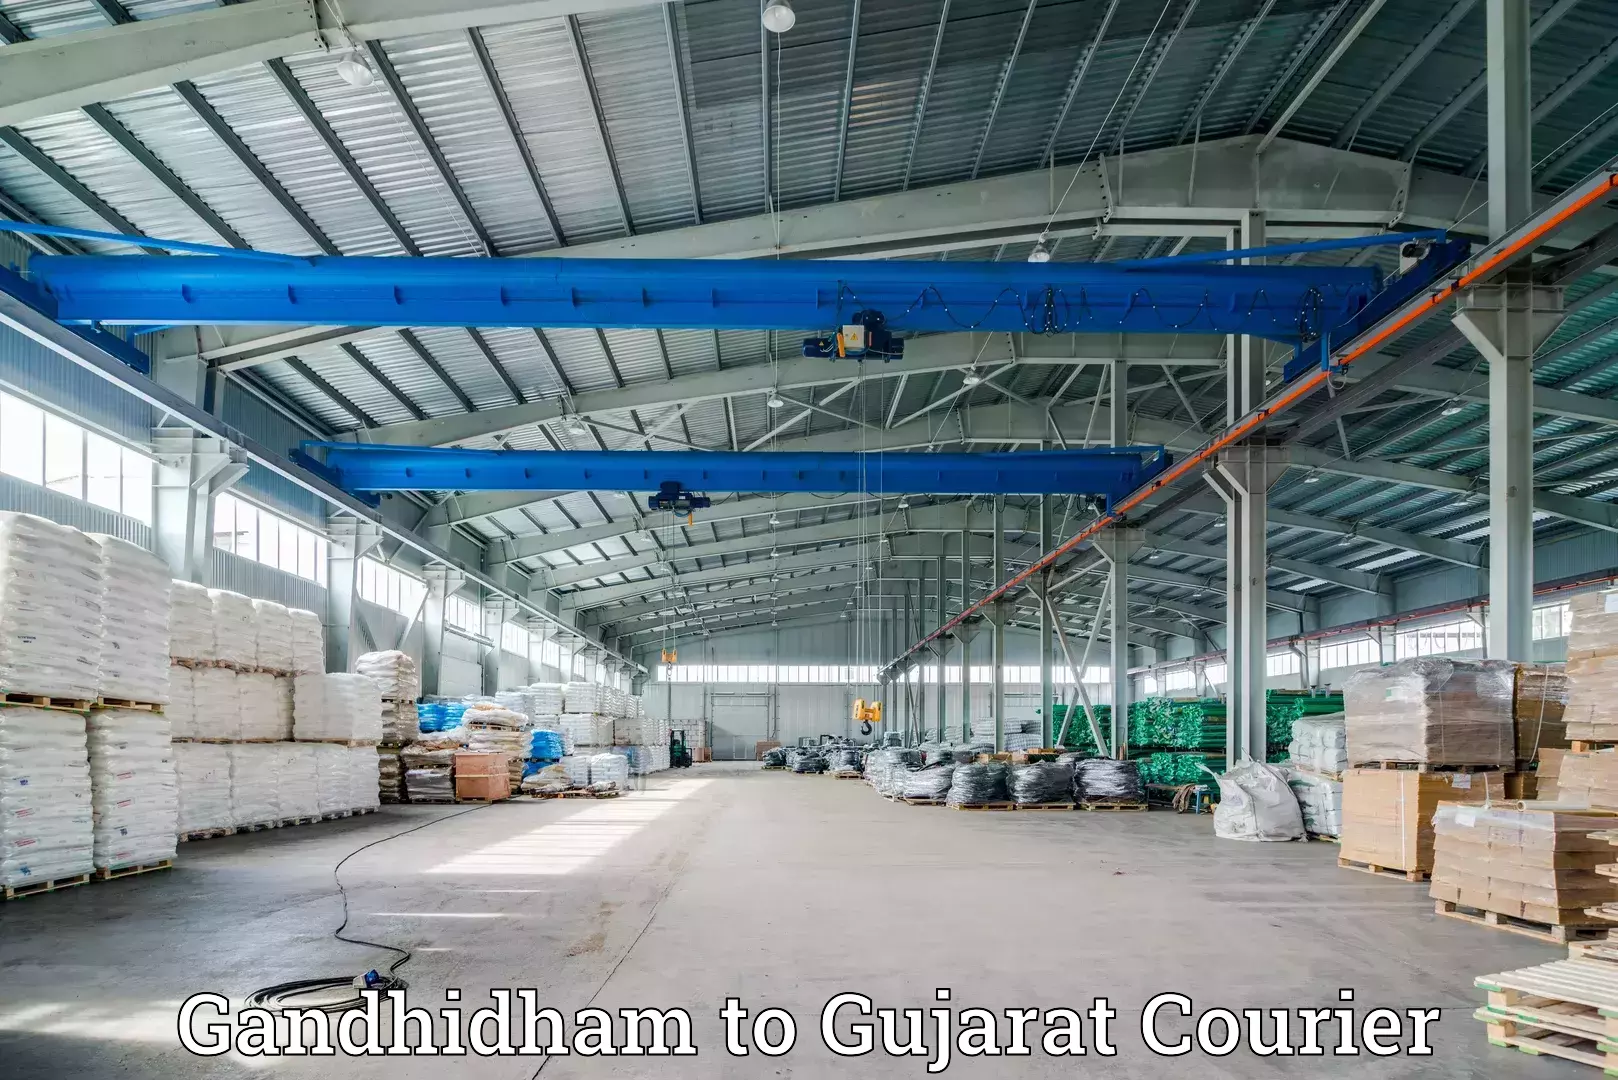 Customer-centric shipping Gandhidham to Gujarat